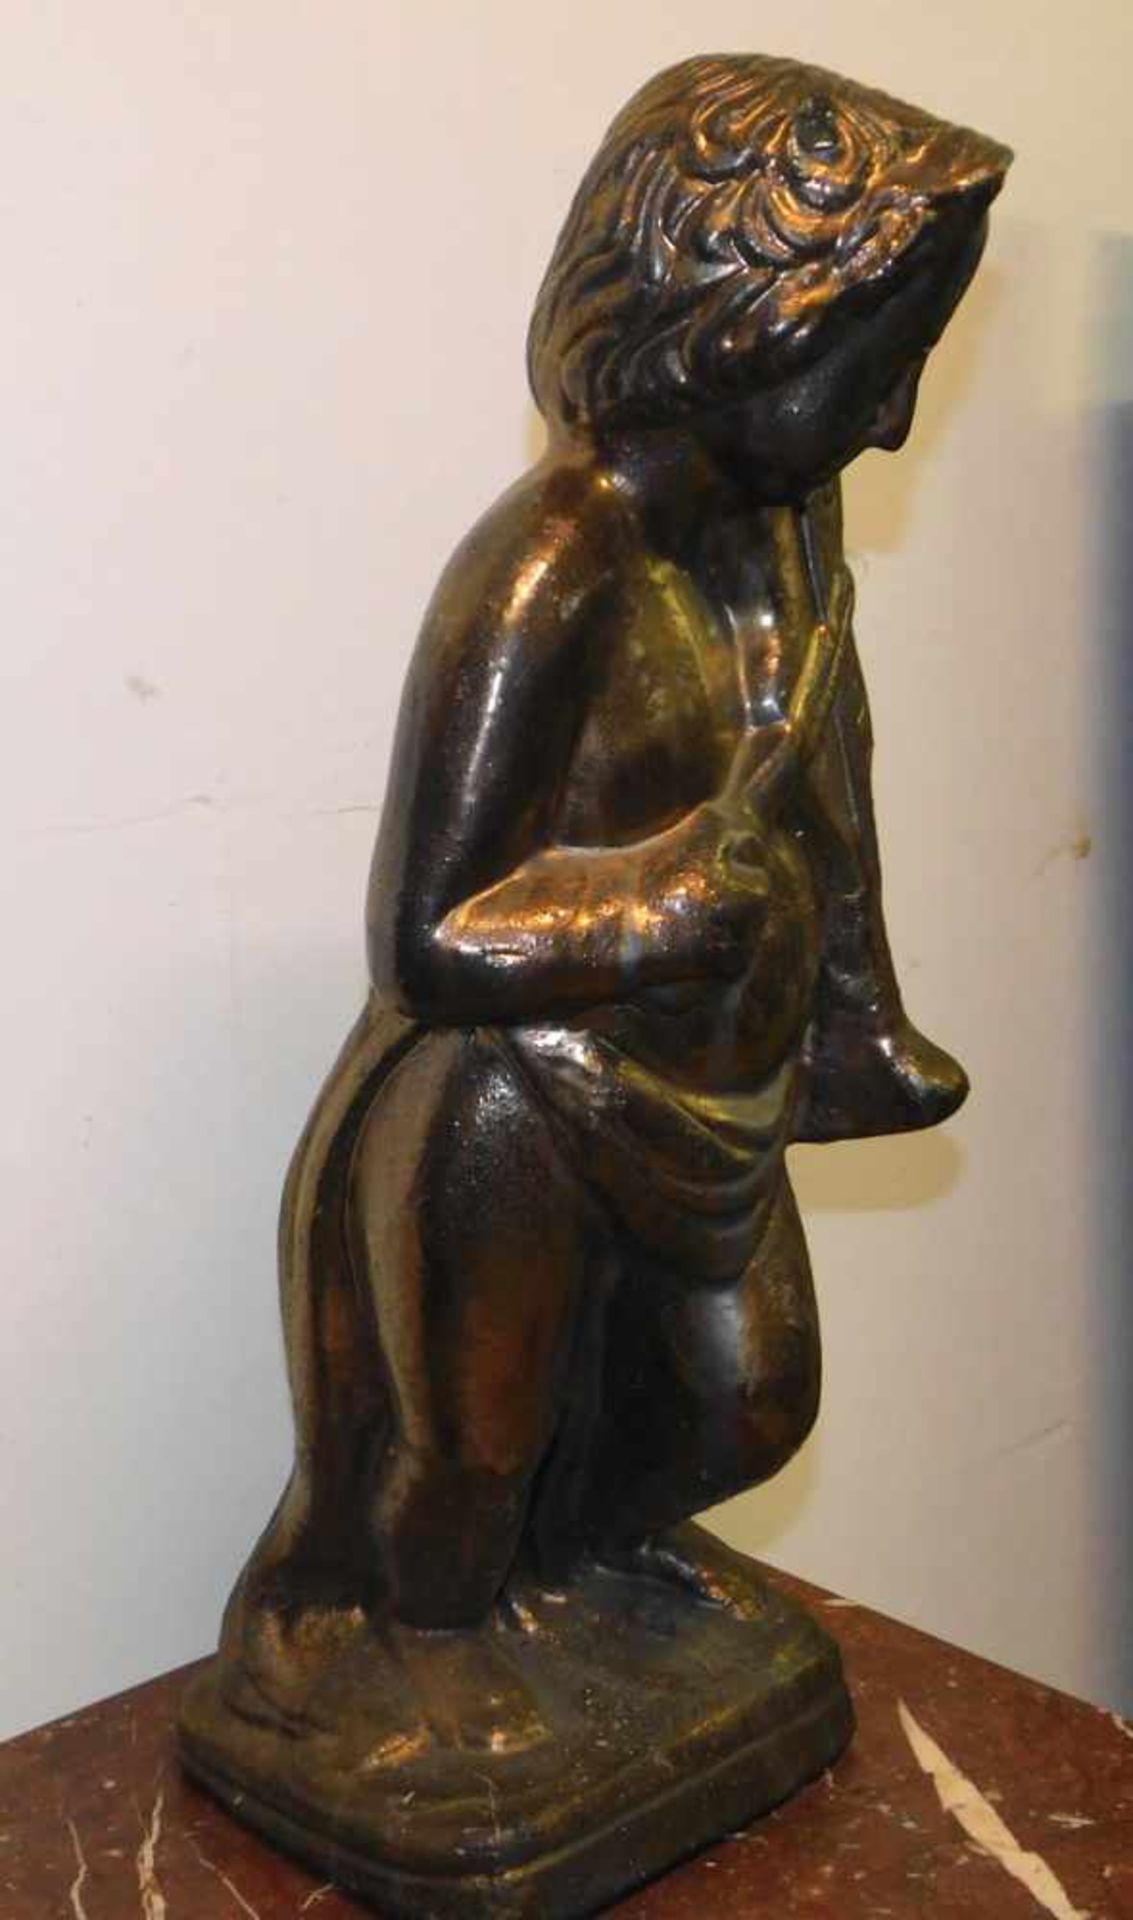 Engel mit Geige, Terrakotta in Goldbronze gefasst, 2. H. 20. Jhdt., Höhe 62 cm, Sockel 19 x 22 cm. - Image 2 of 2